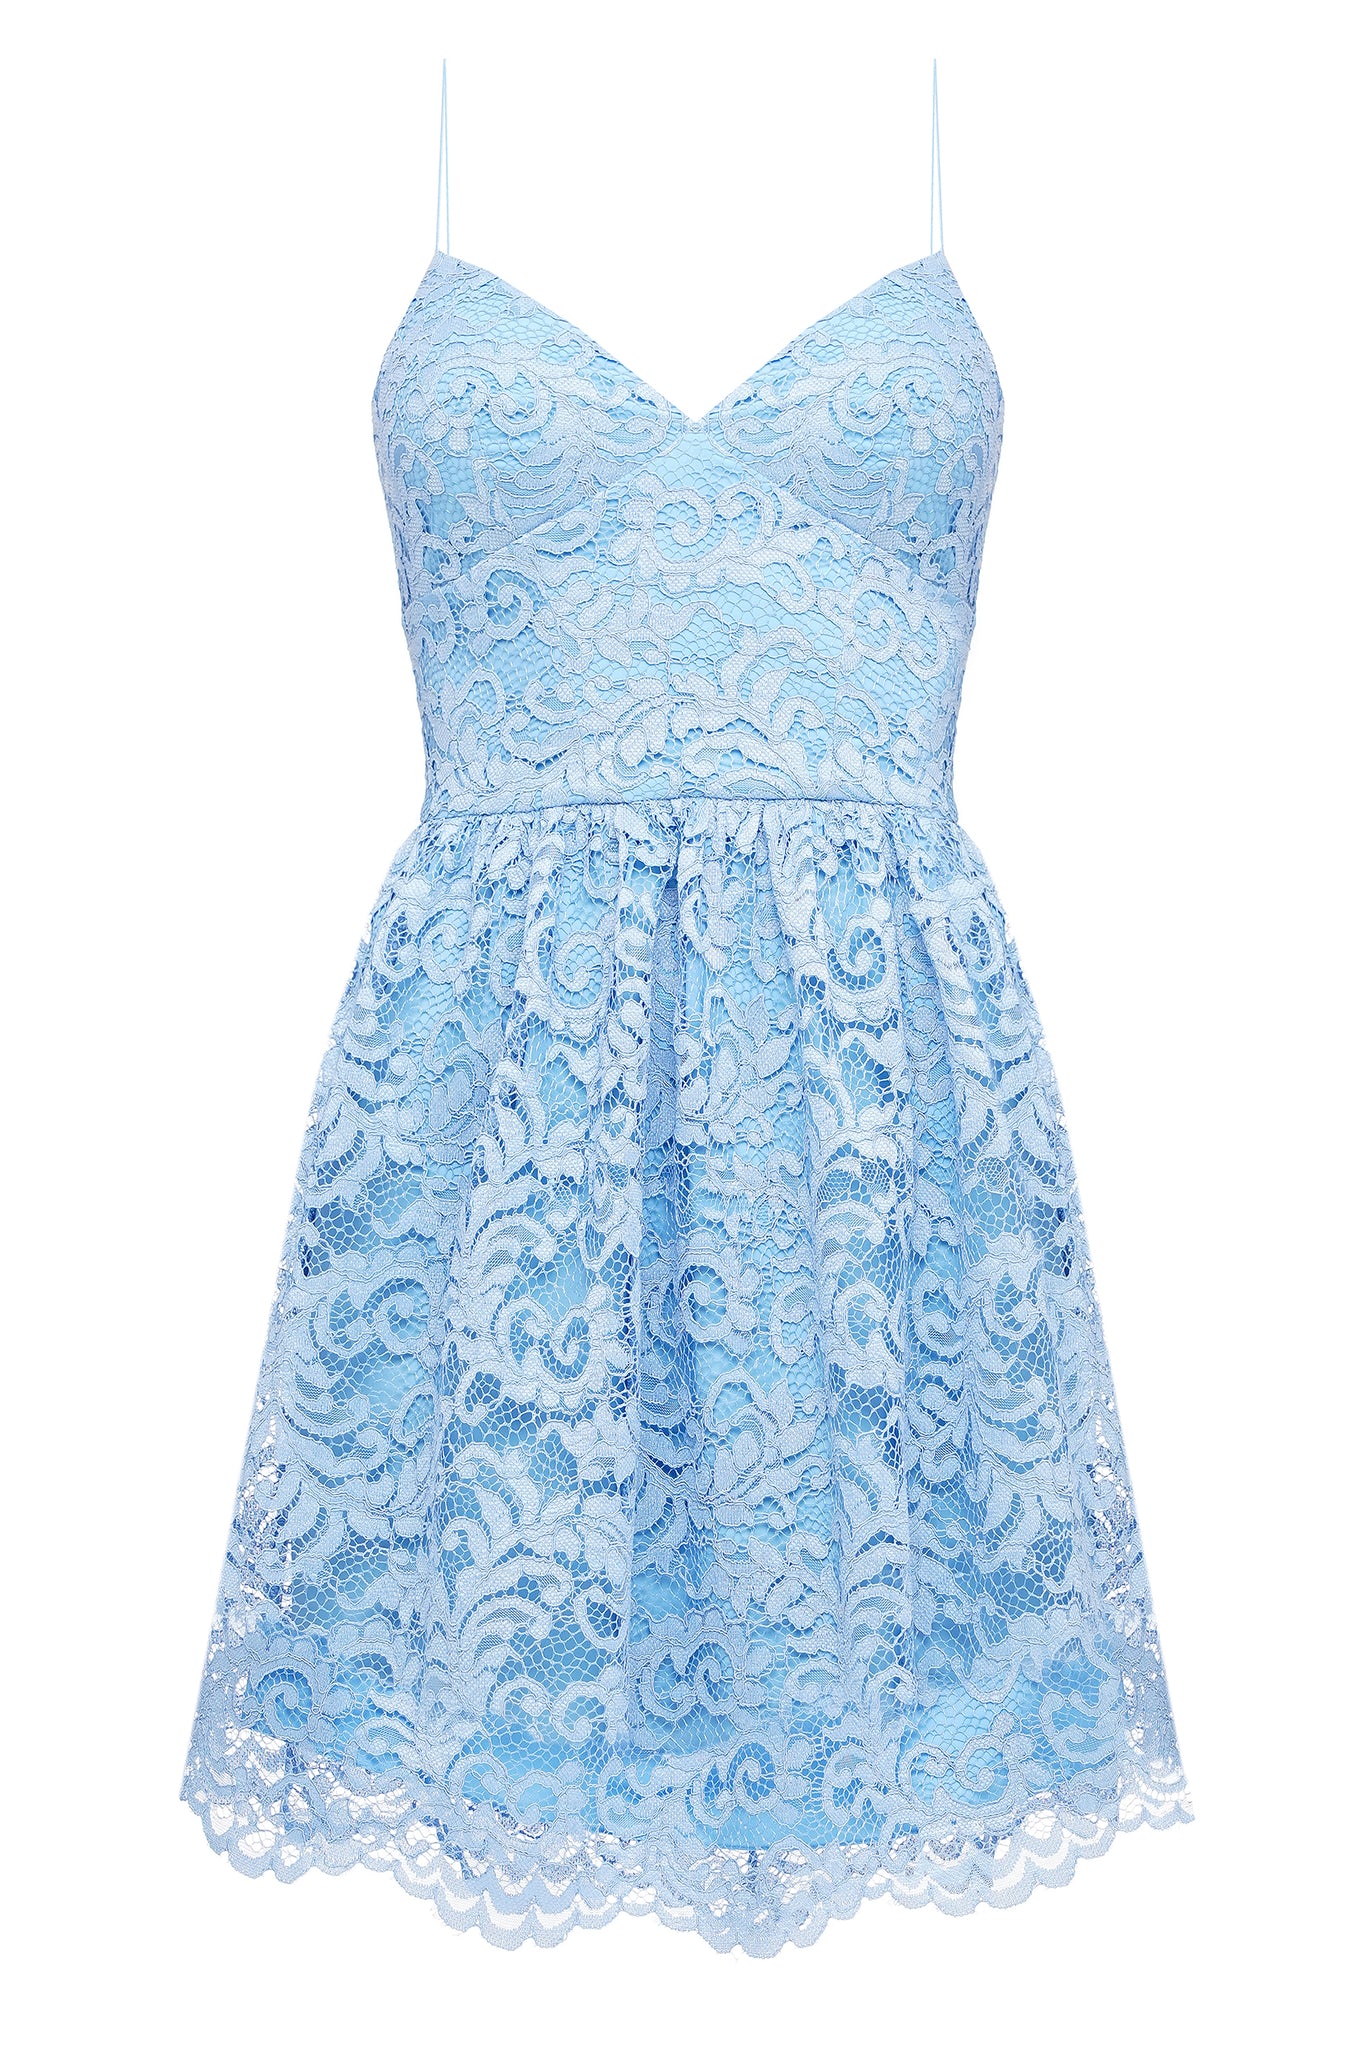 Lilibet Lace Blue Dress